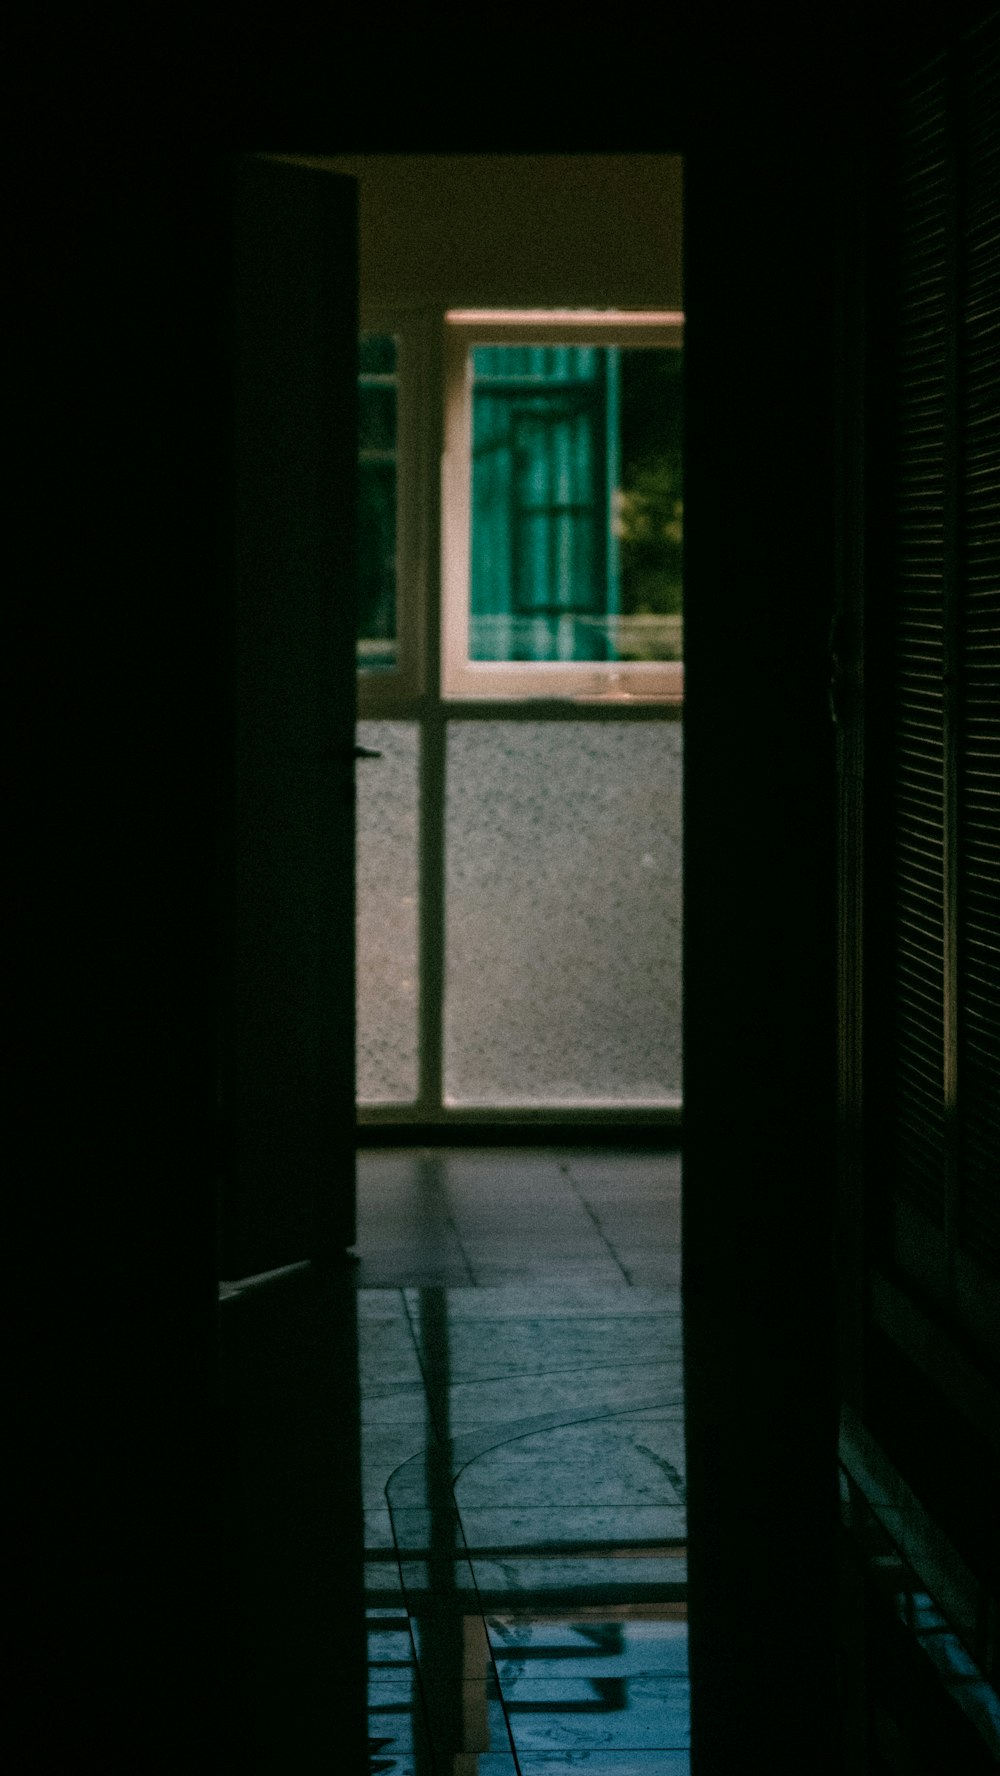 an open door leading into a dark room